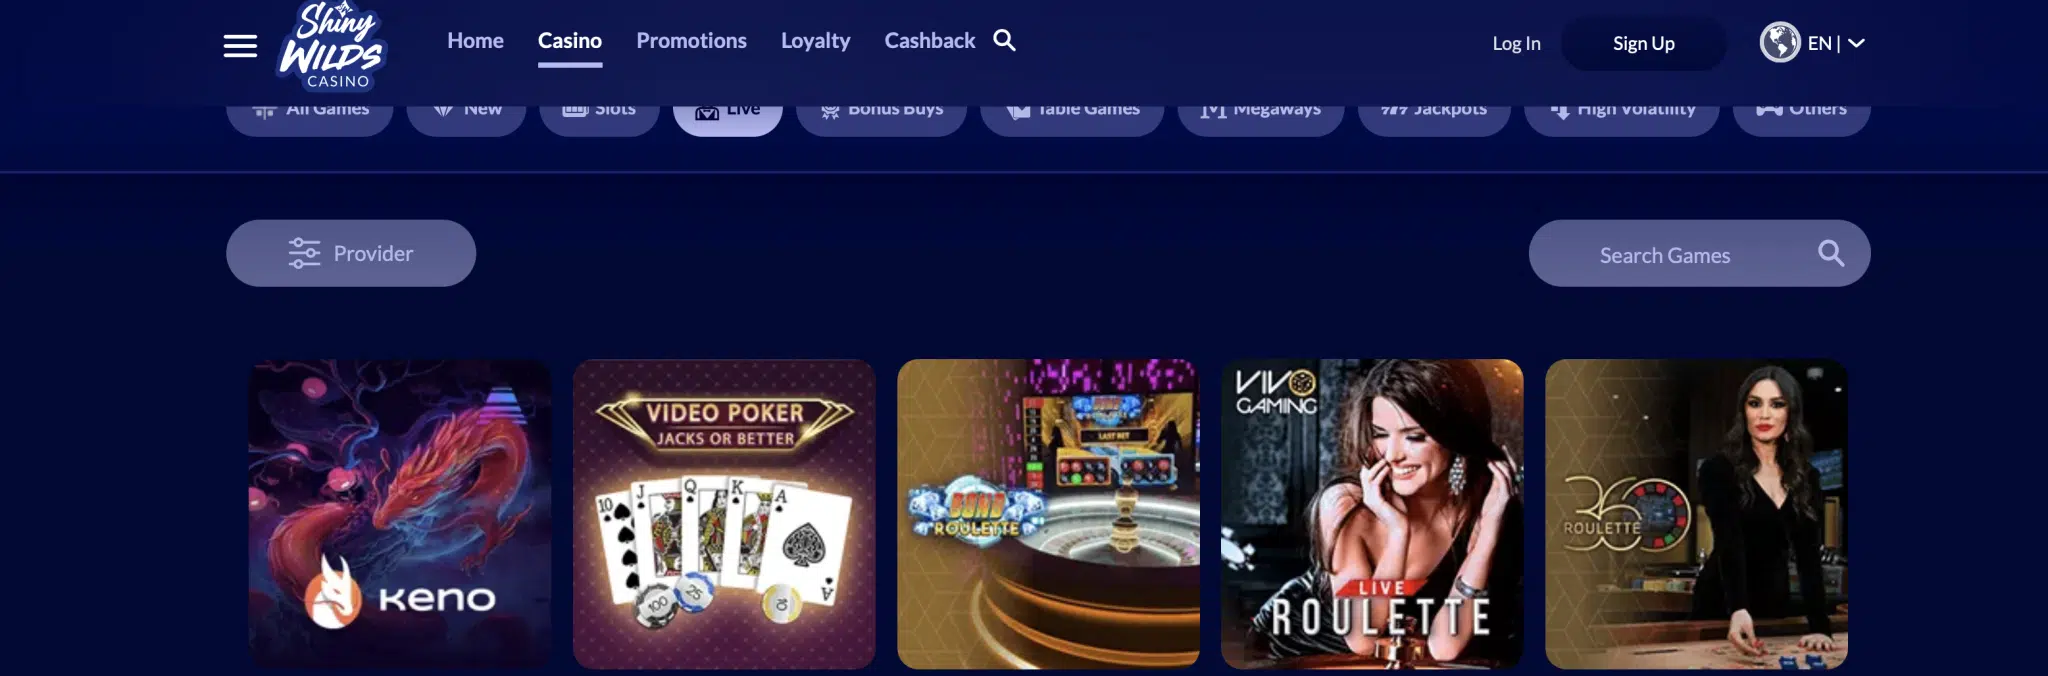 5 olika live-casino spel från olika spelutvecklare syns på bilden